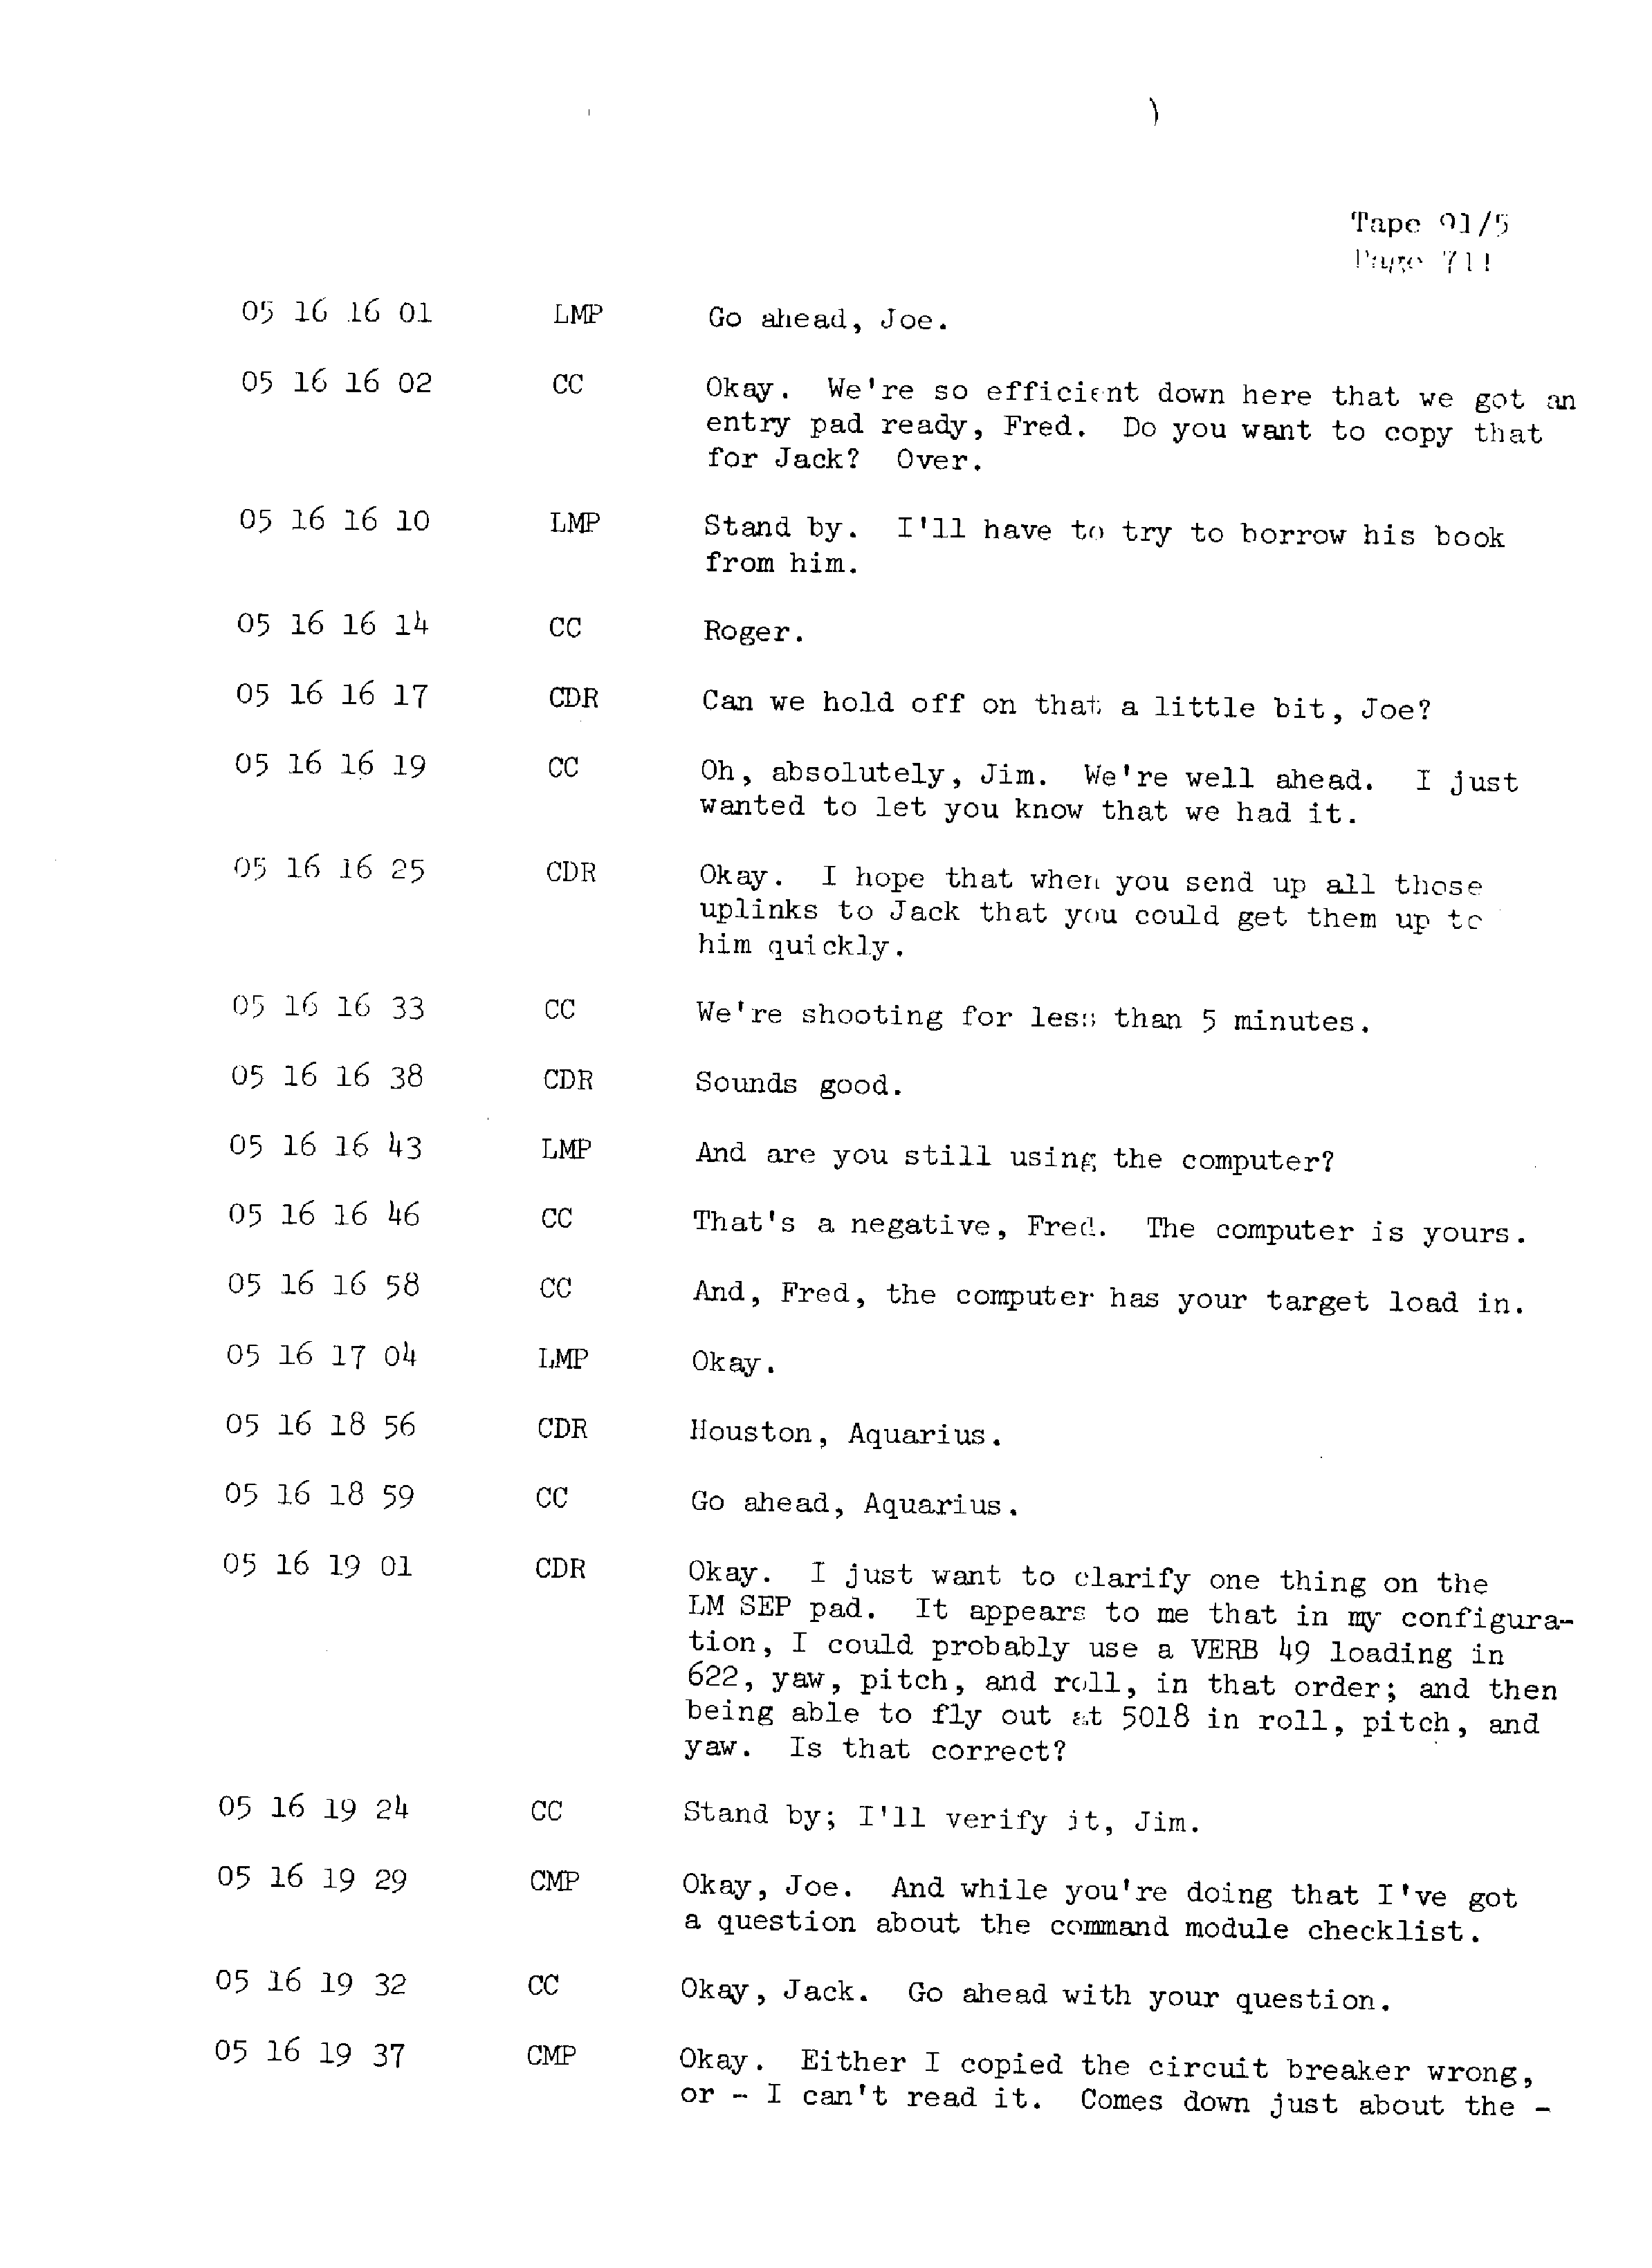 Page 718 of Apollo 13’s original transcript